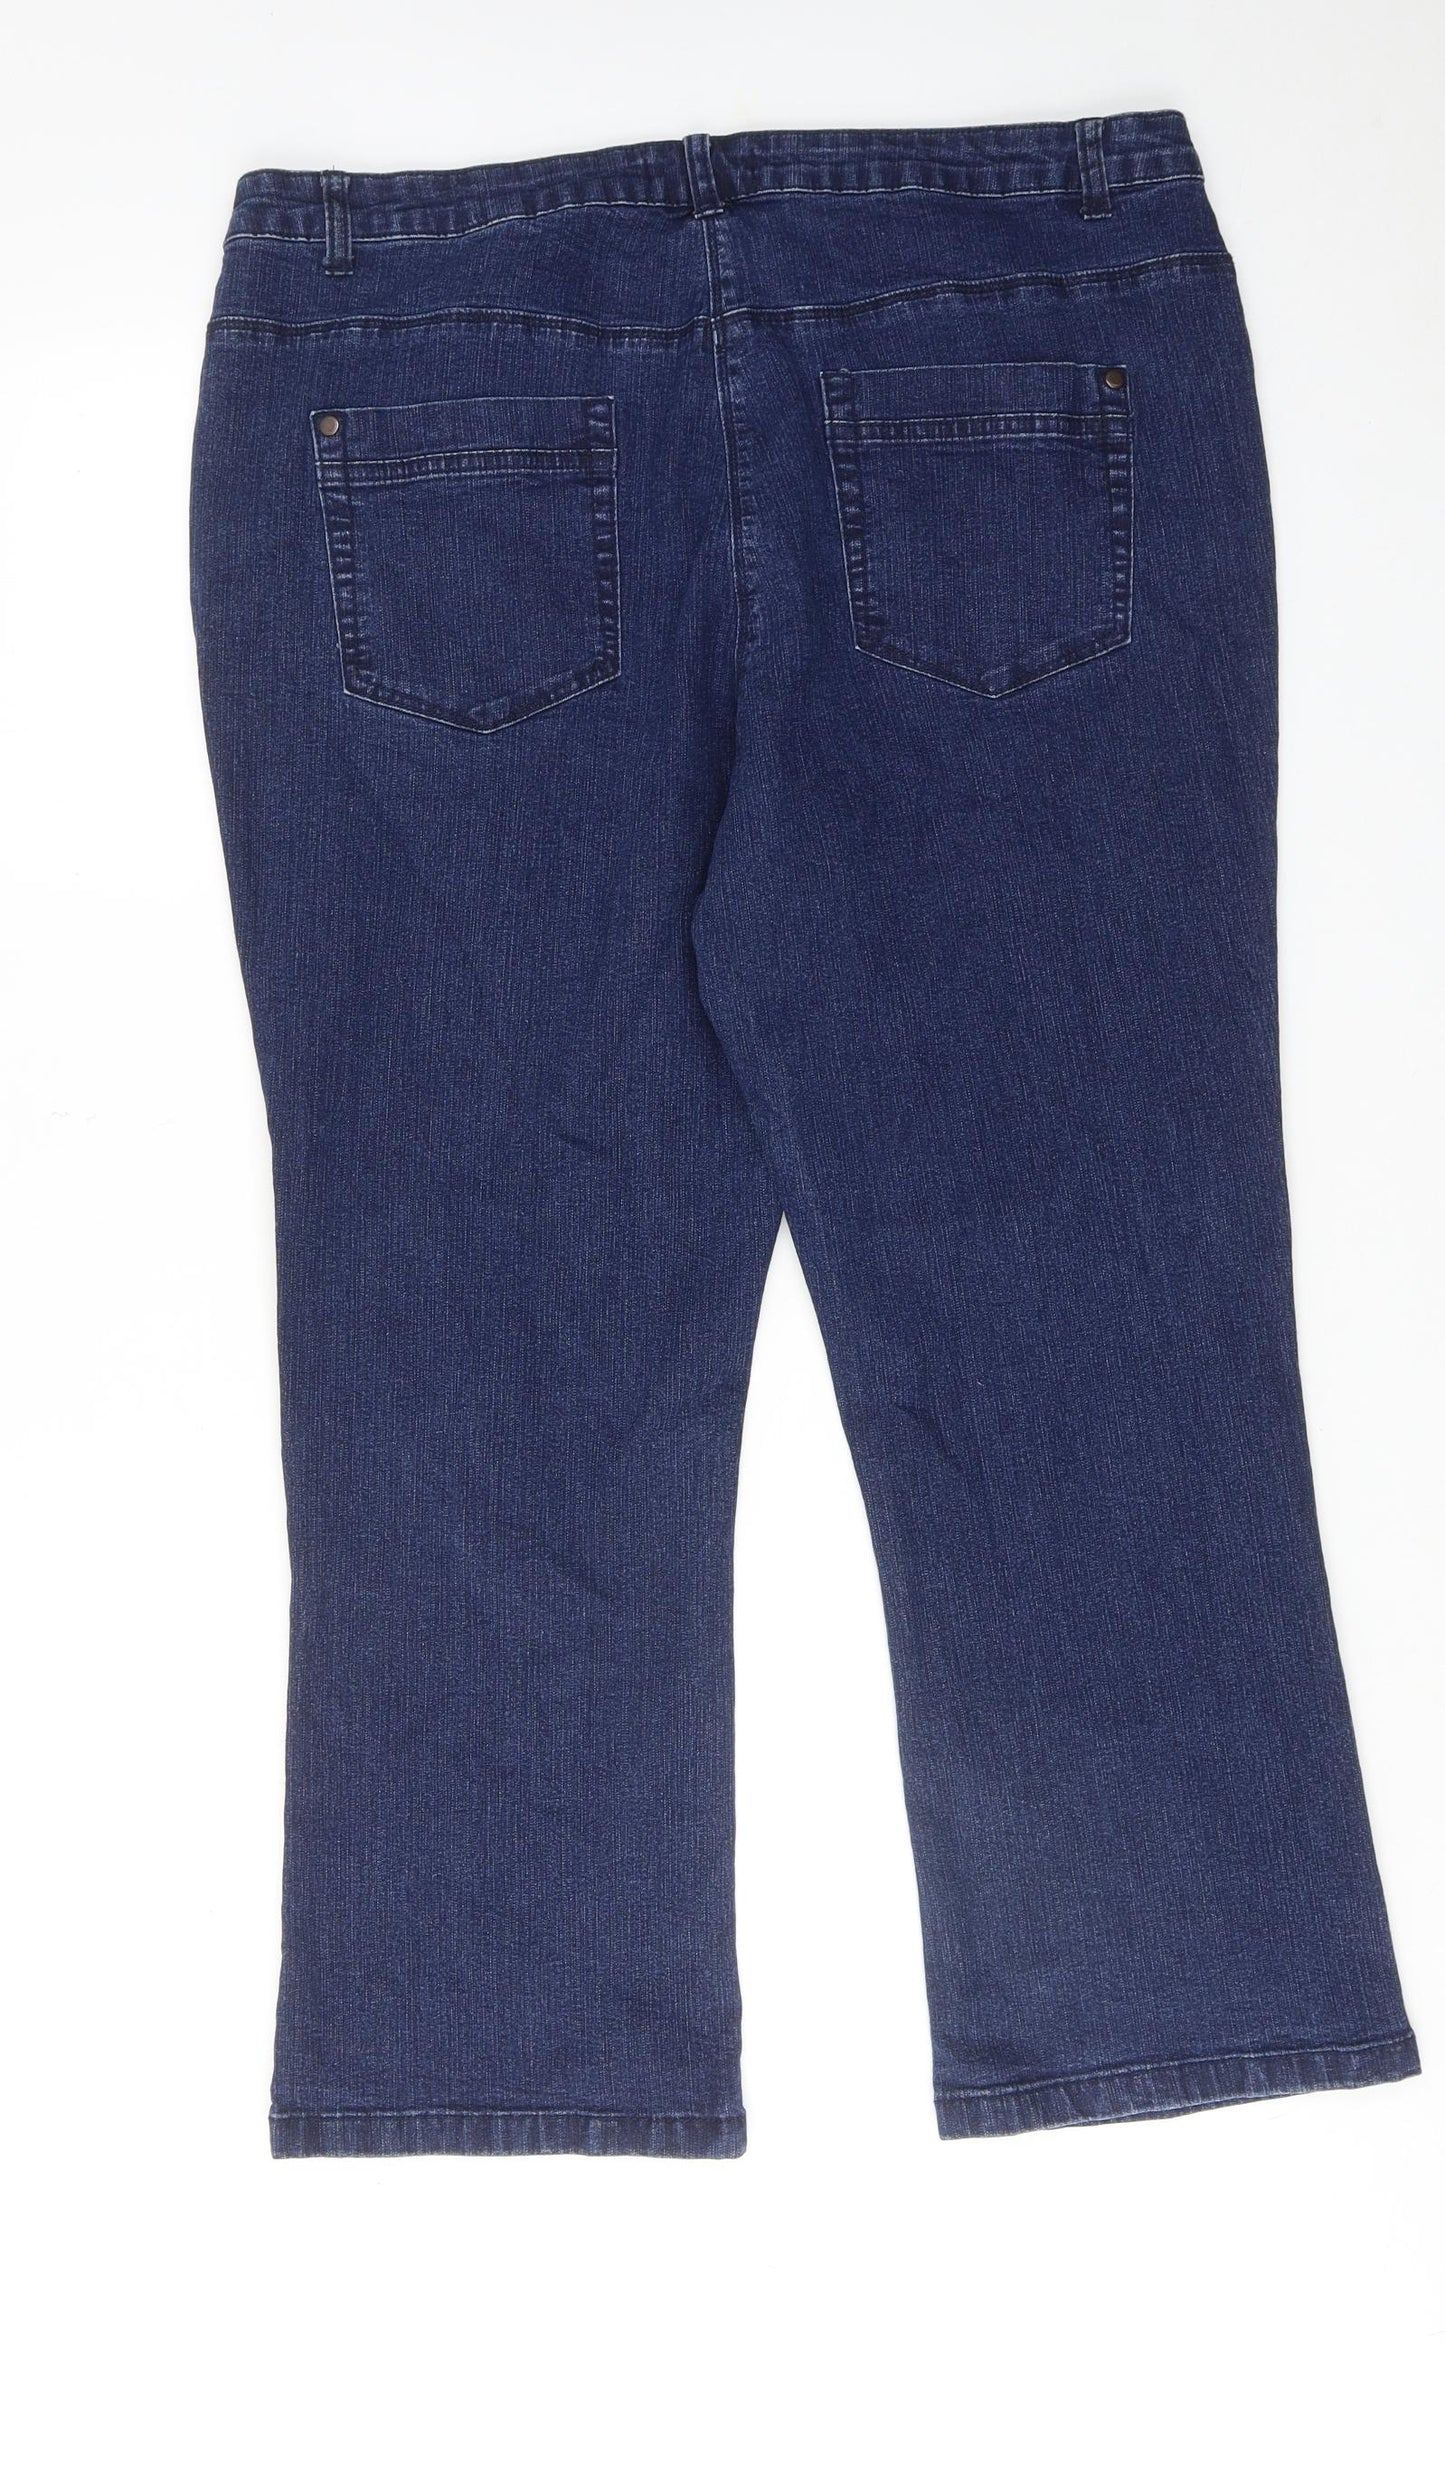 Bonmarché Womens Blue Cotton Bootcut Jeans Size 20 Regular Zip